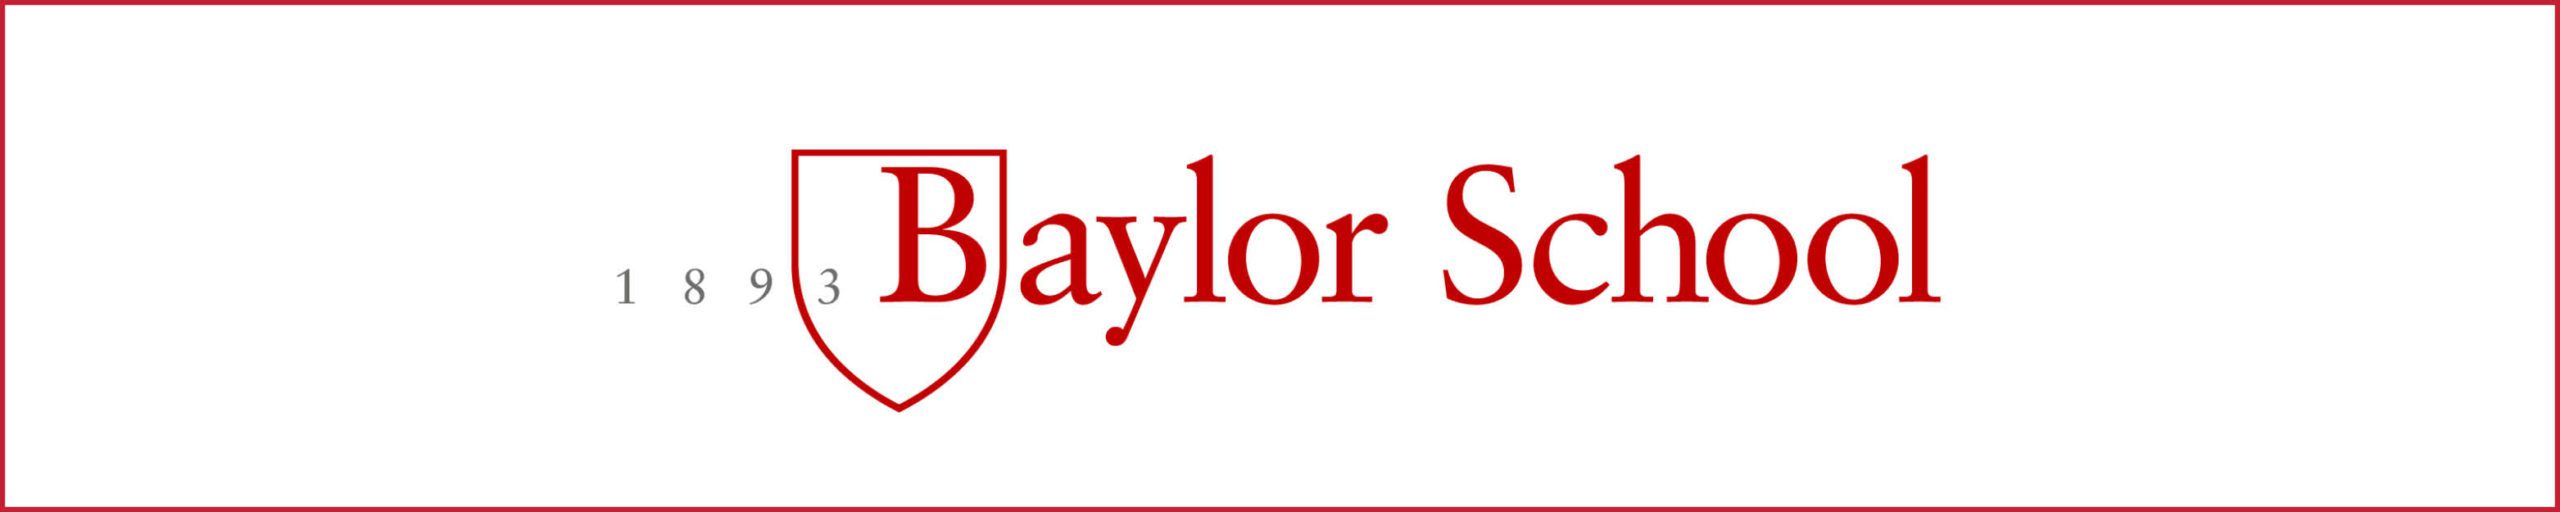 Baylor School Ad